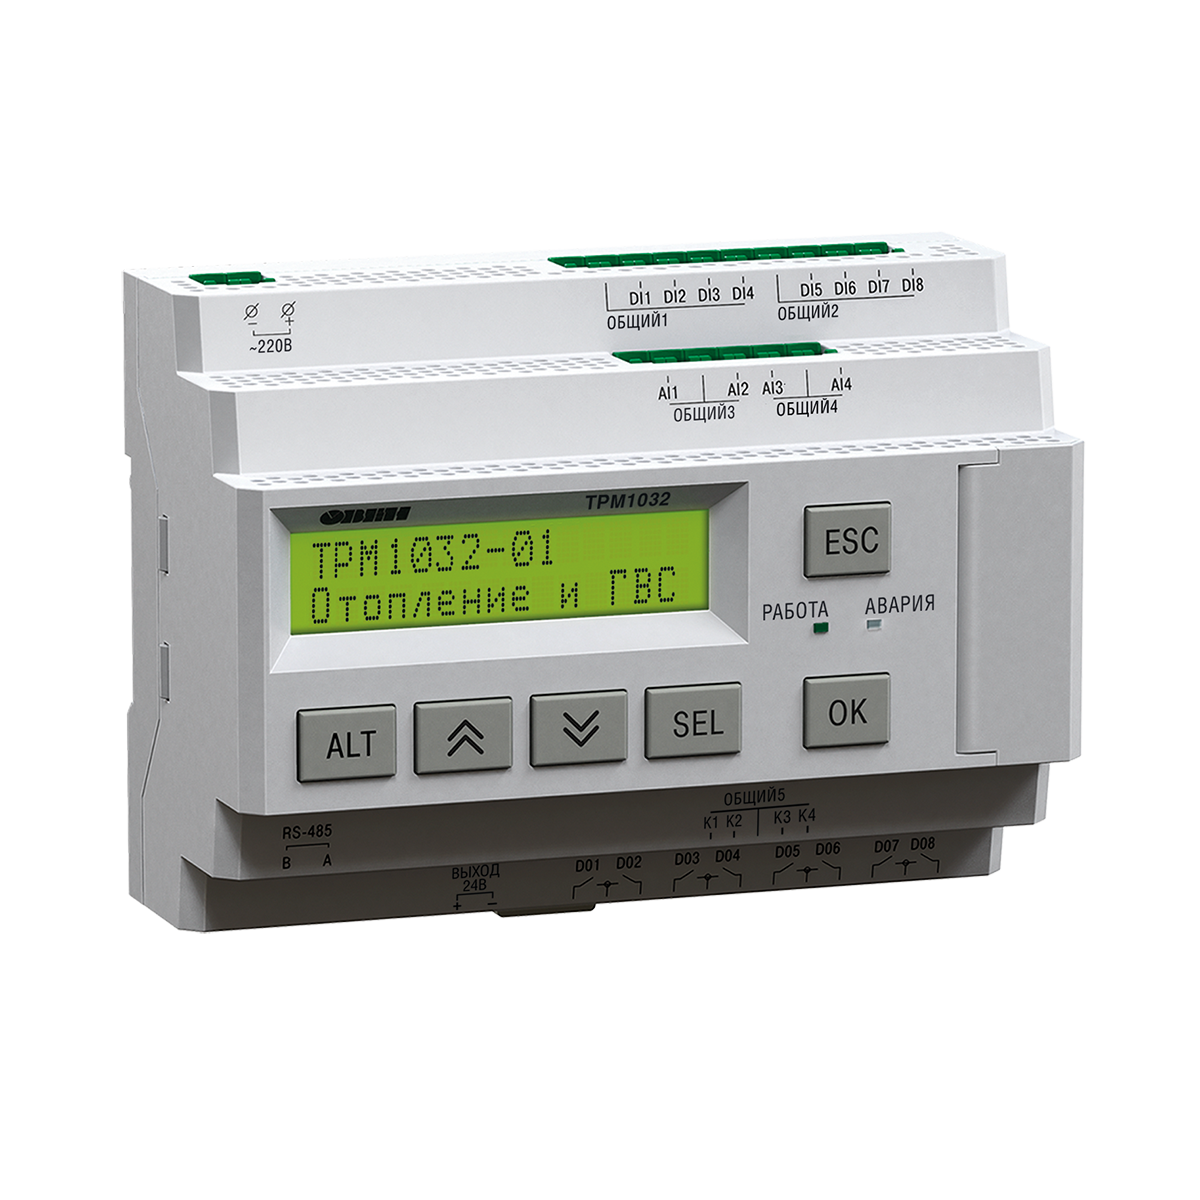 ТРМ1032М-11.10.Р – устройство с готовой логикой для автоматизации контуров отопления и ГВС в ИТП/ЦТП.